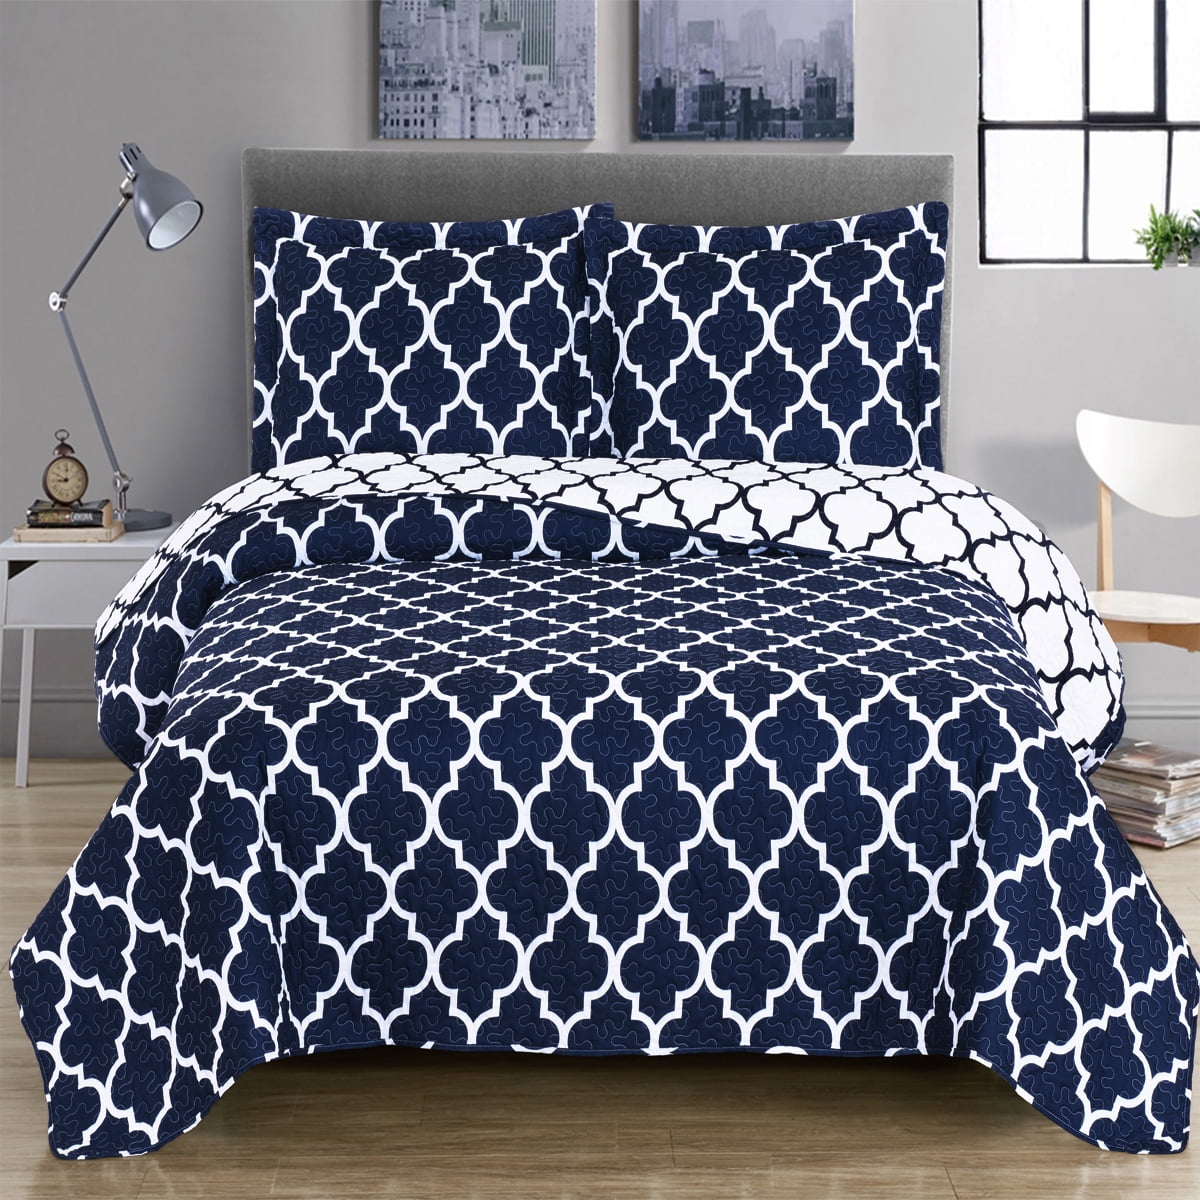 Details about   Comfort Spaces Mona 3 Piece Quilt Coverlet Bedspread Ultra Soft 100% Cotton Pais 